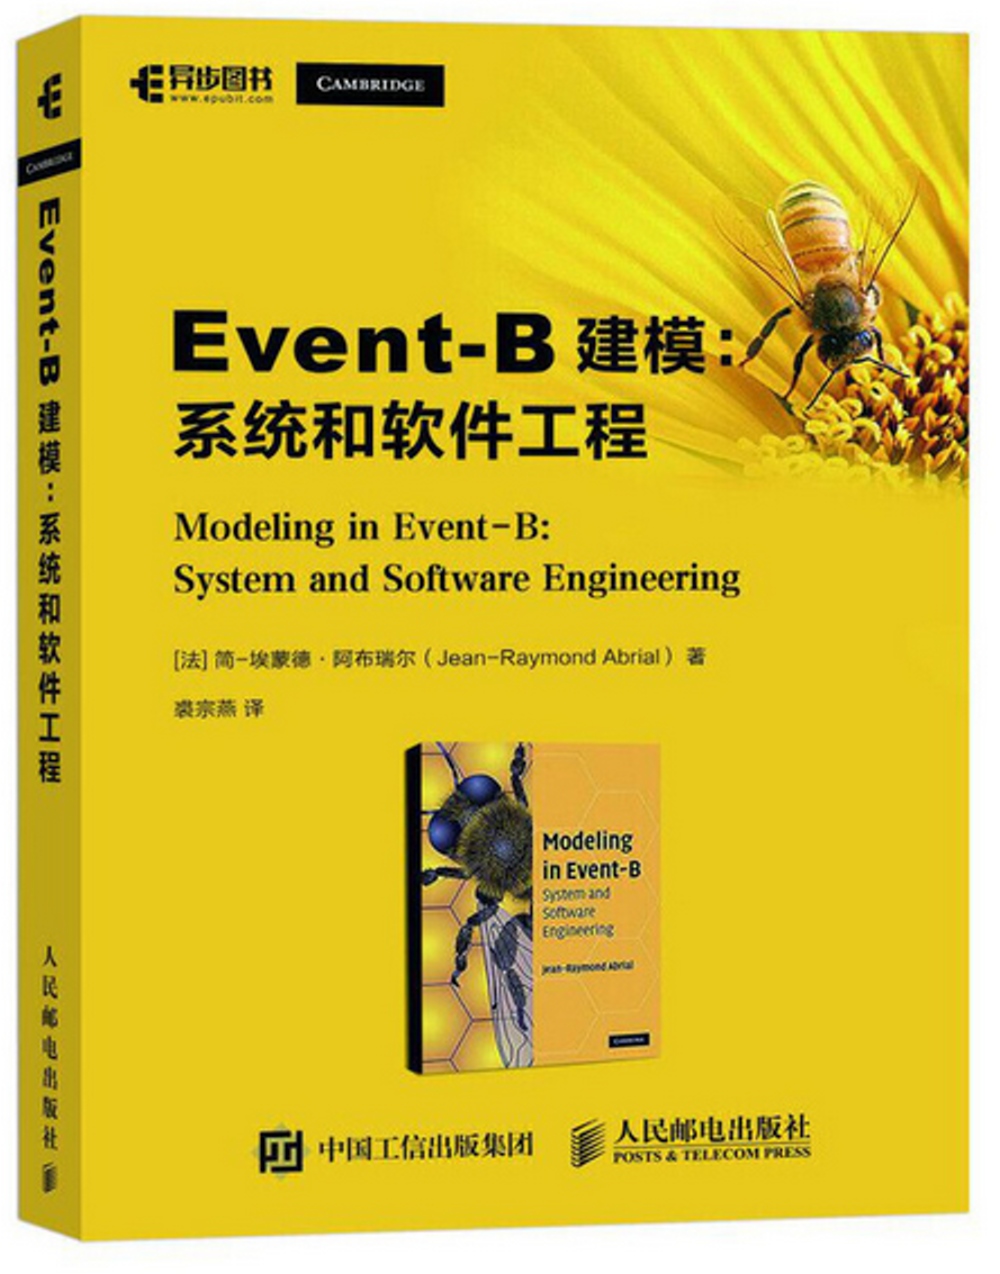 Event-B建模：系統和軟體工程